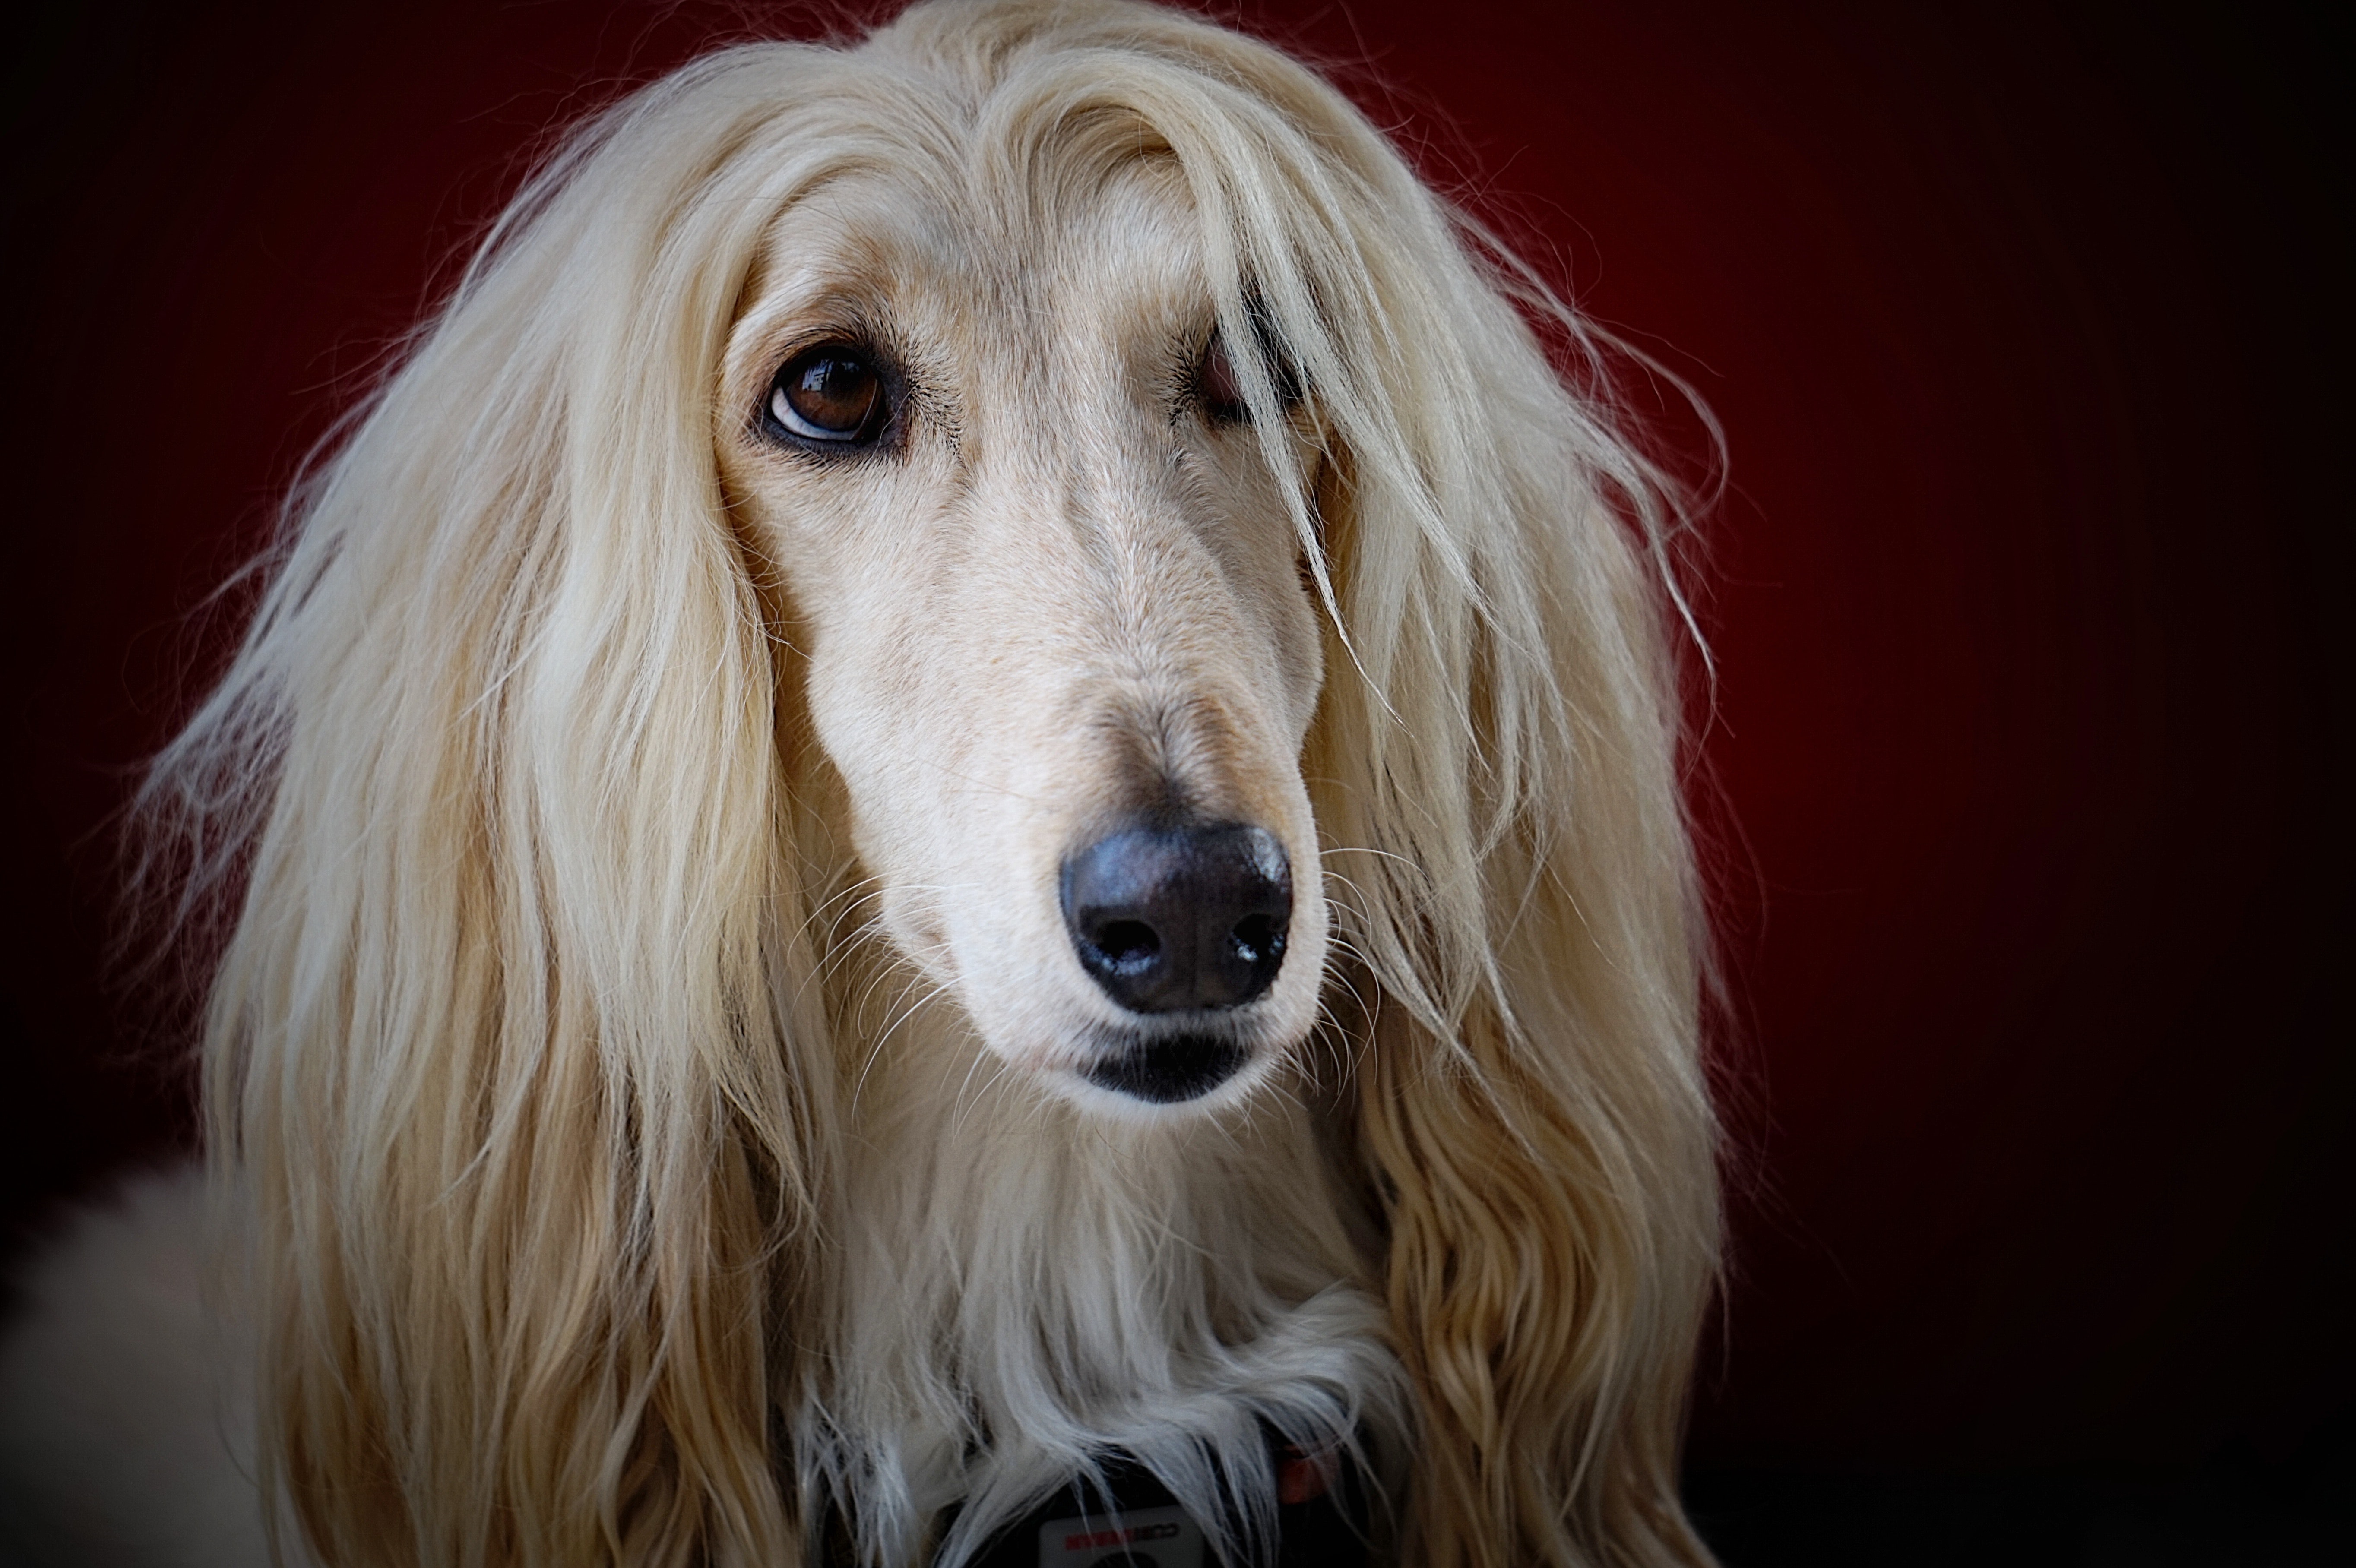 lægemidlet seng justere Rapunzel-hund går viralt: Hvorfor har den lækrere hår end mig? | Femina